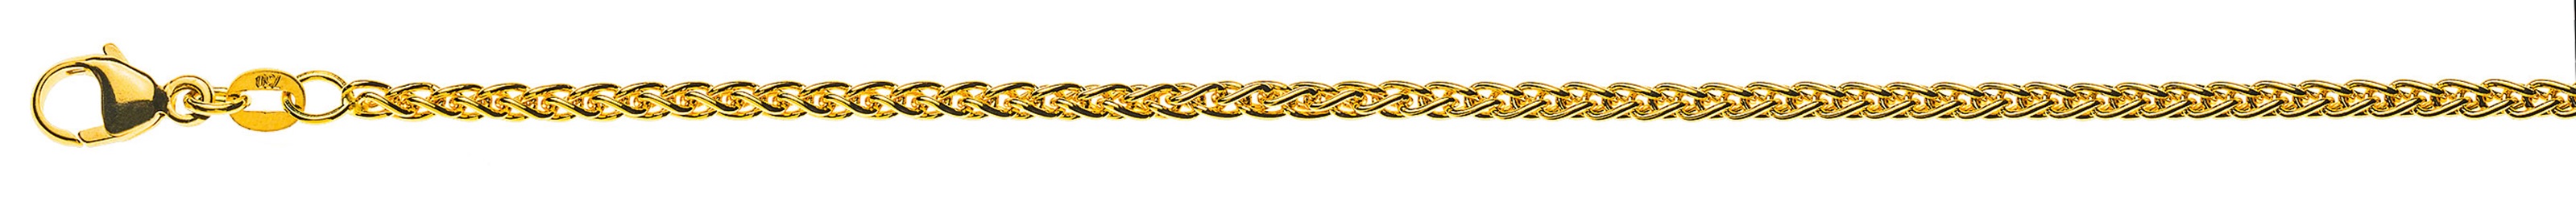 AURONOS Prestige Halskette Gelbgold 18K Zopfkette 45cm 2.5mm